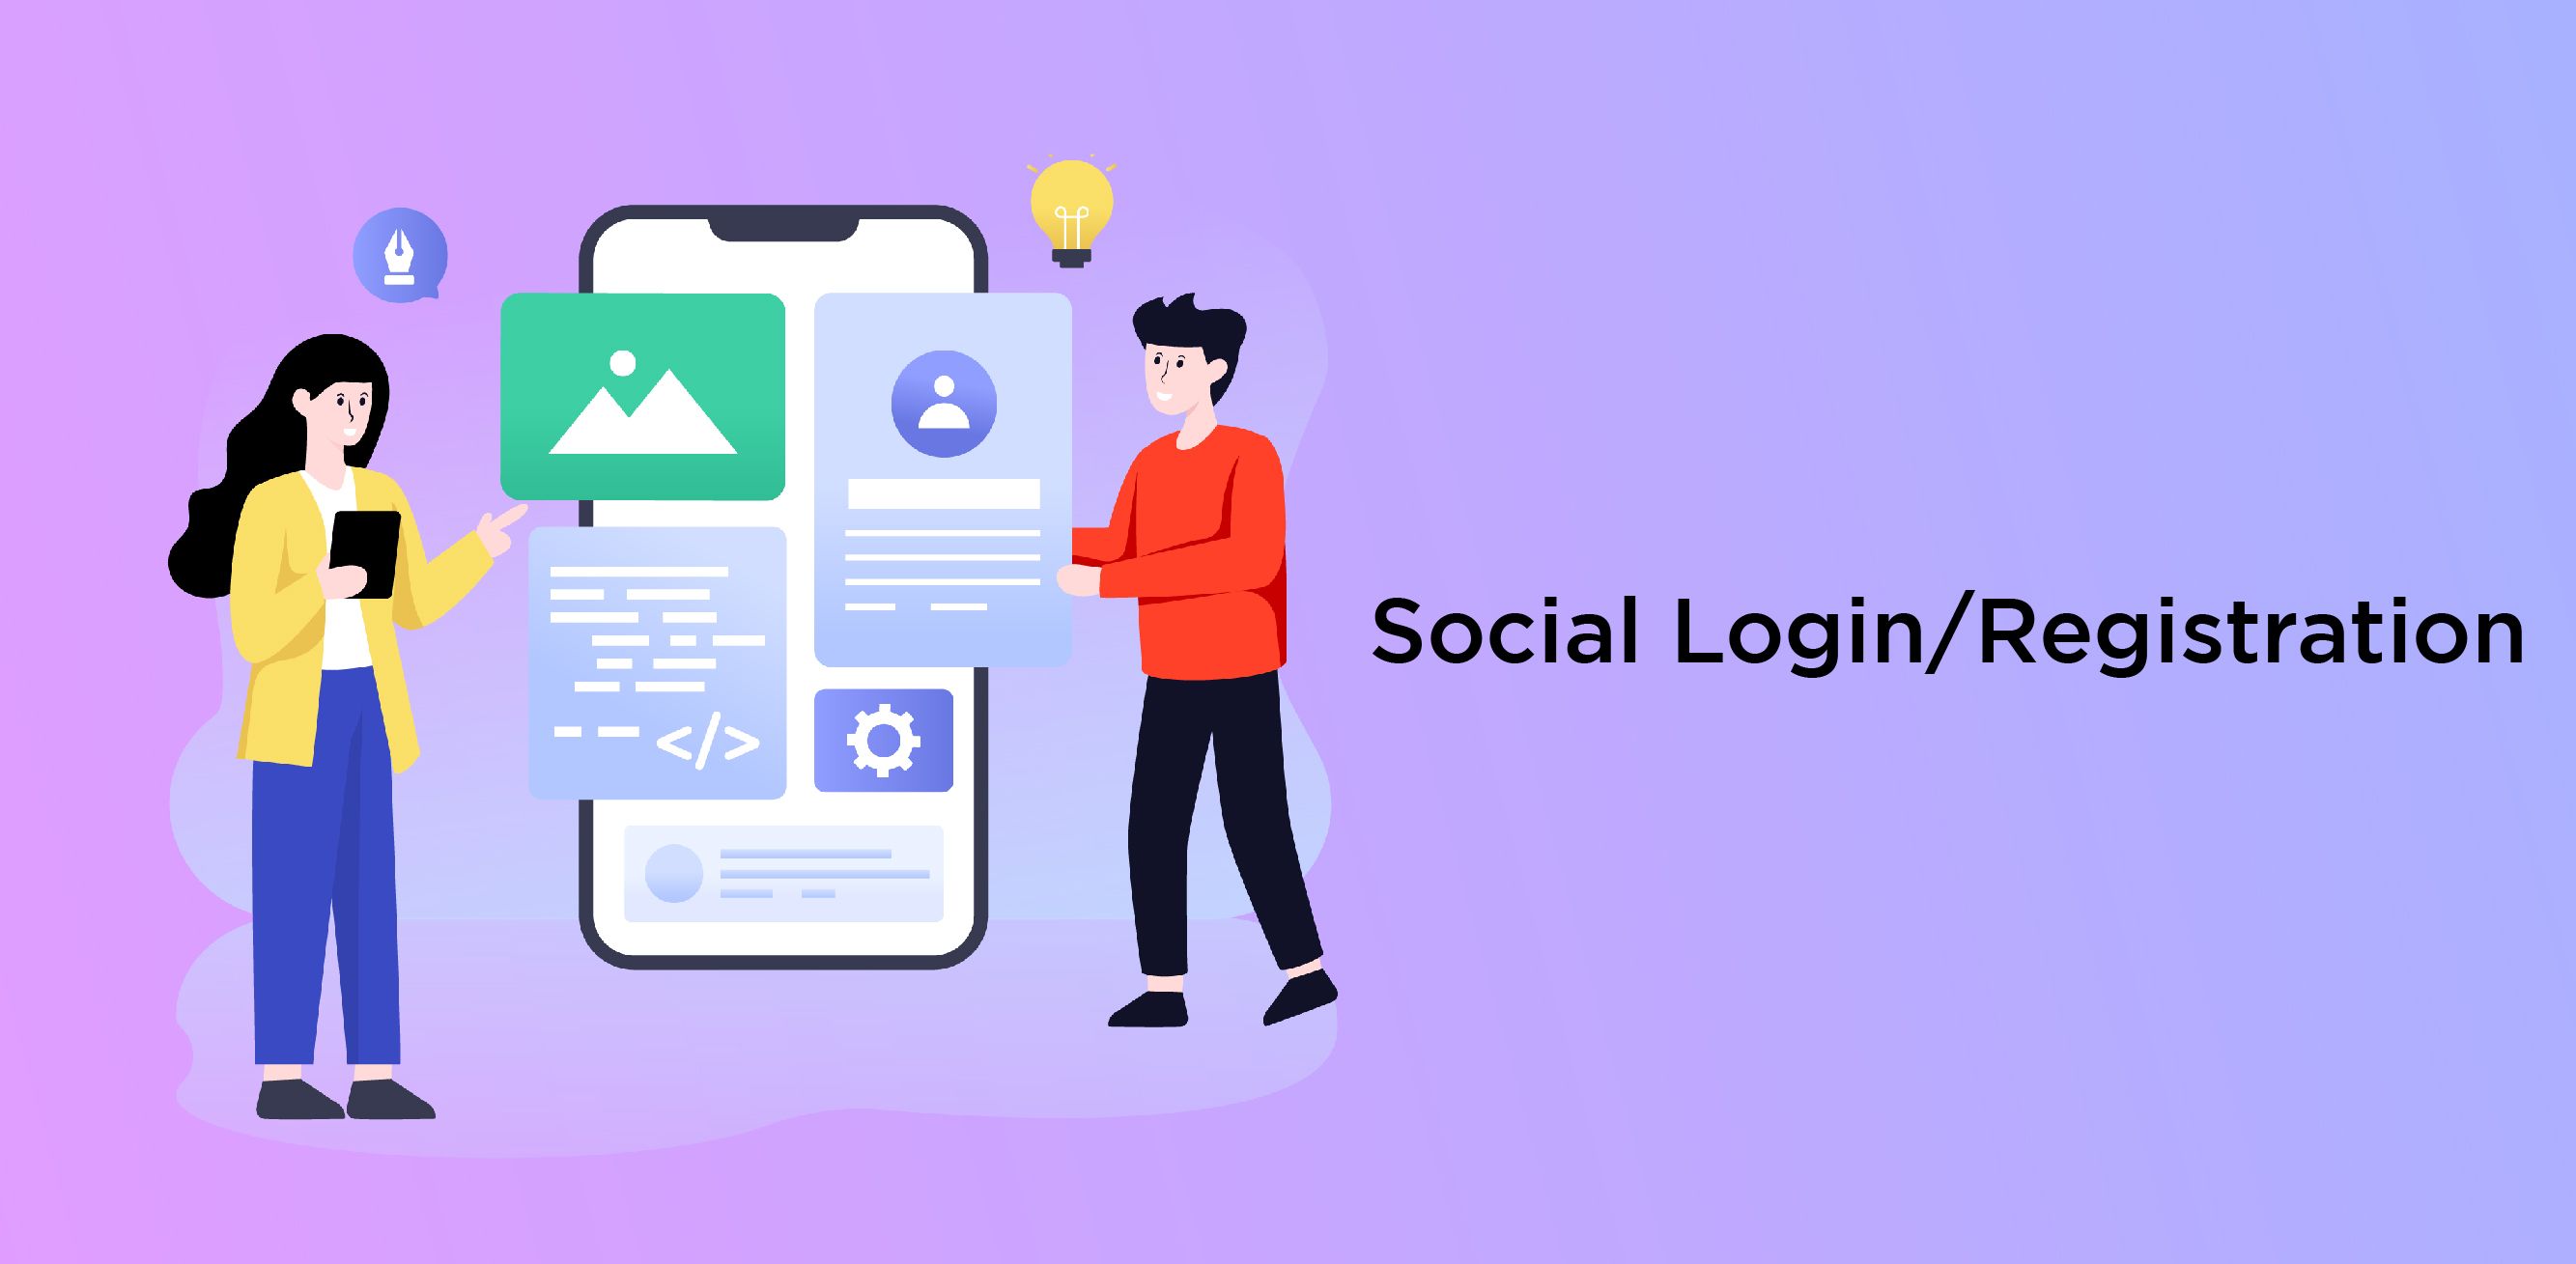 Social Login/Registration